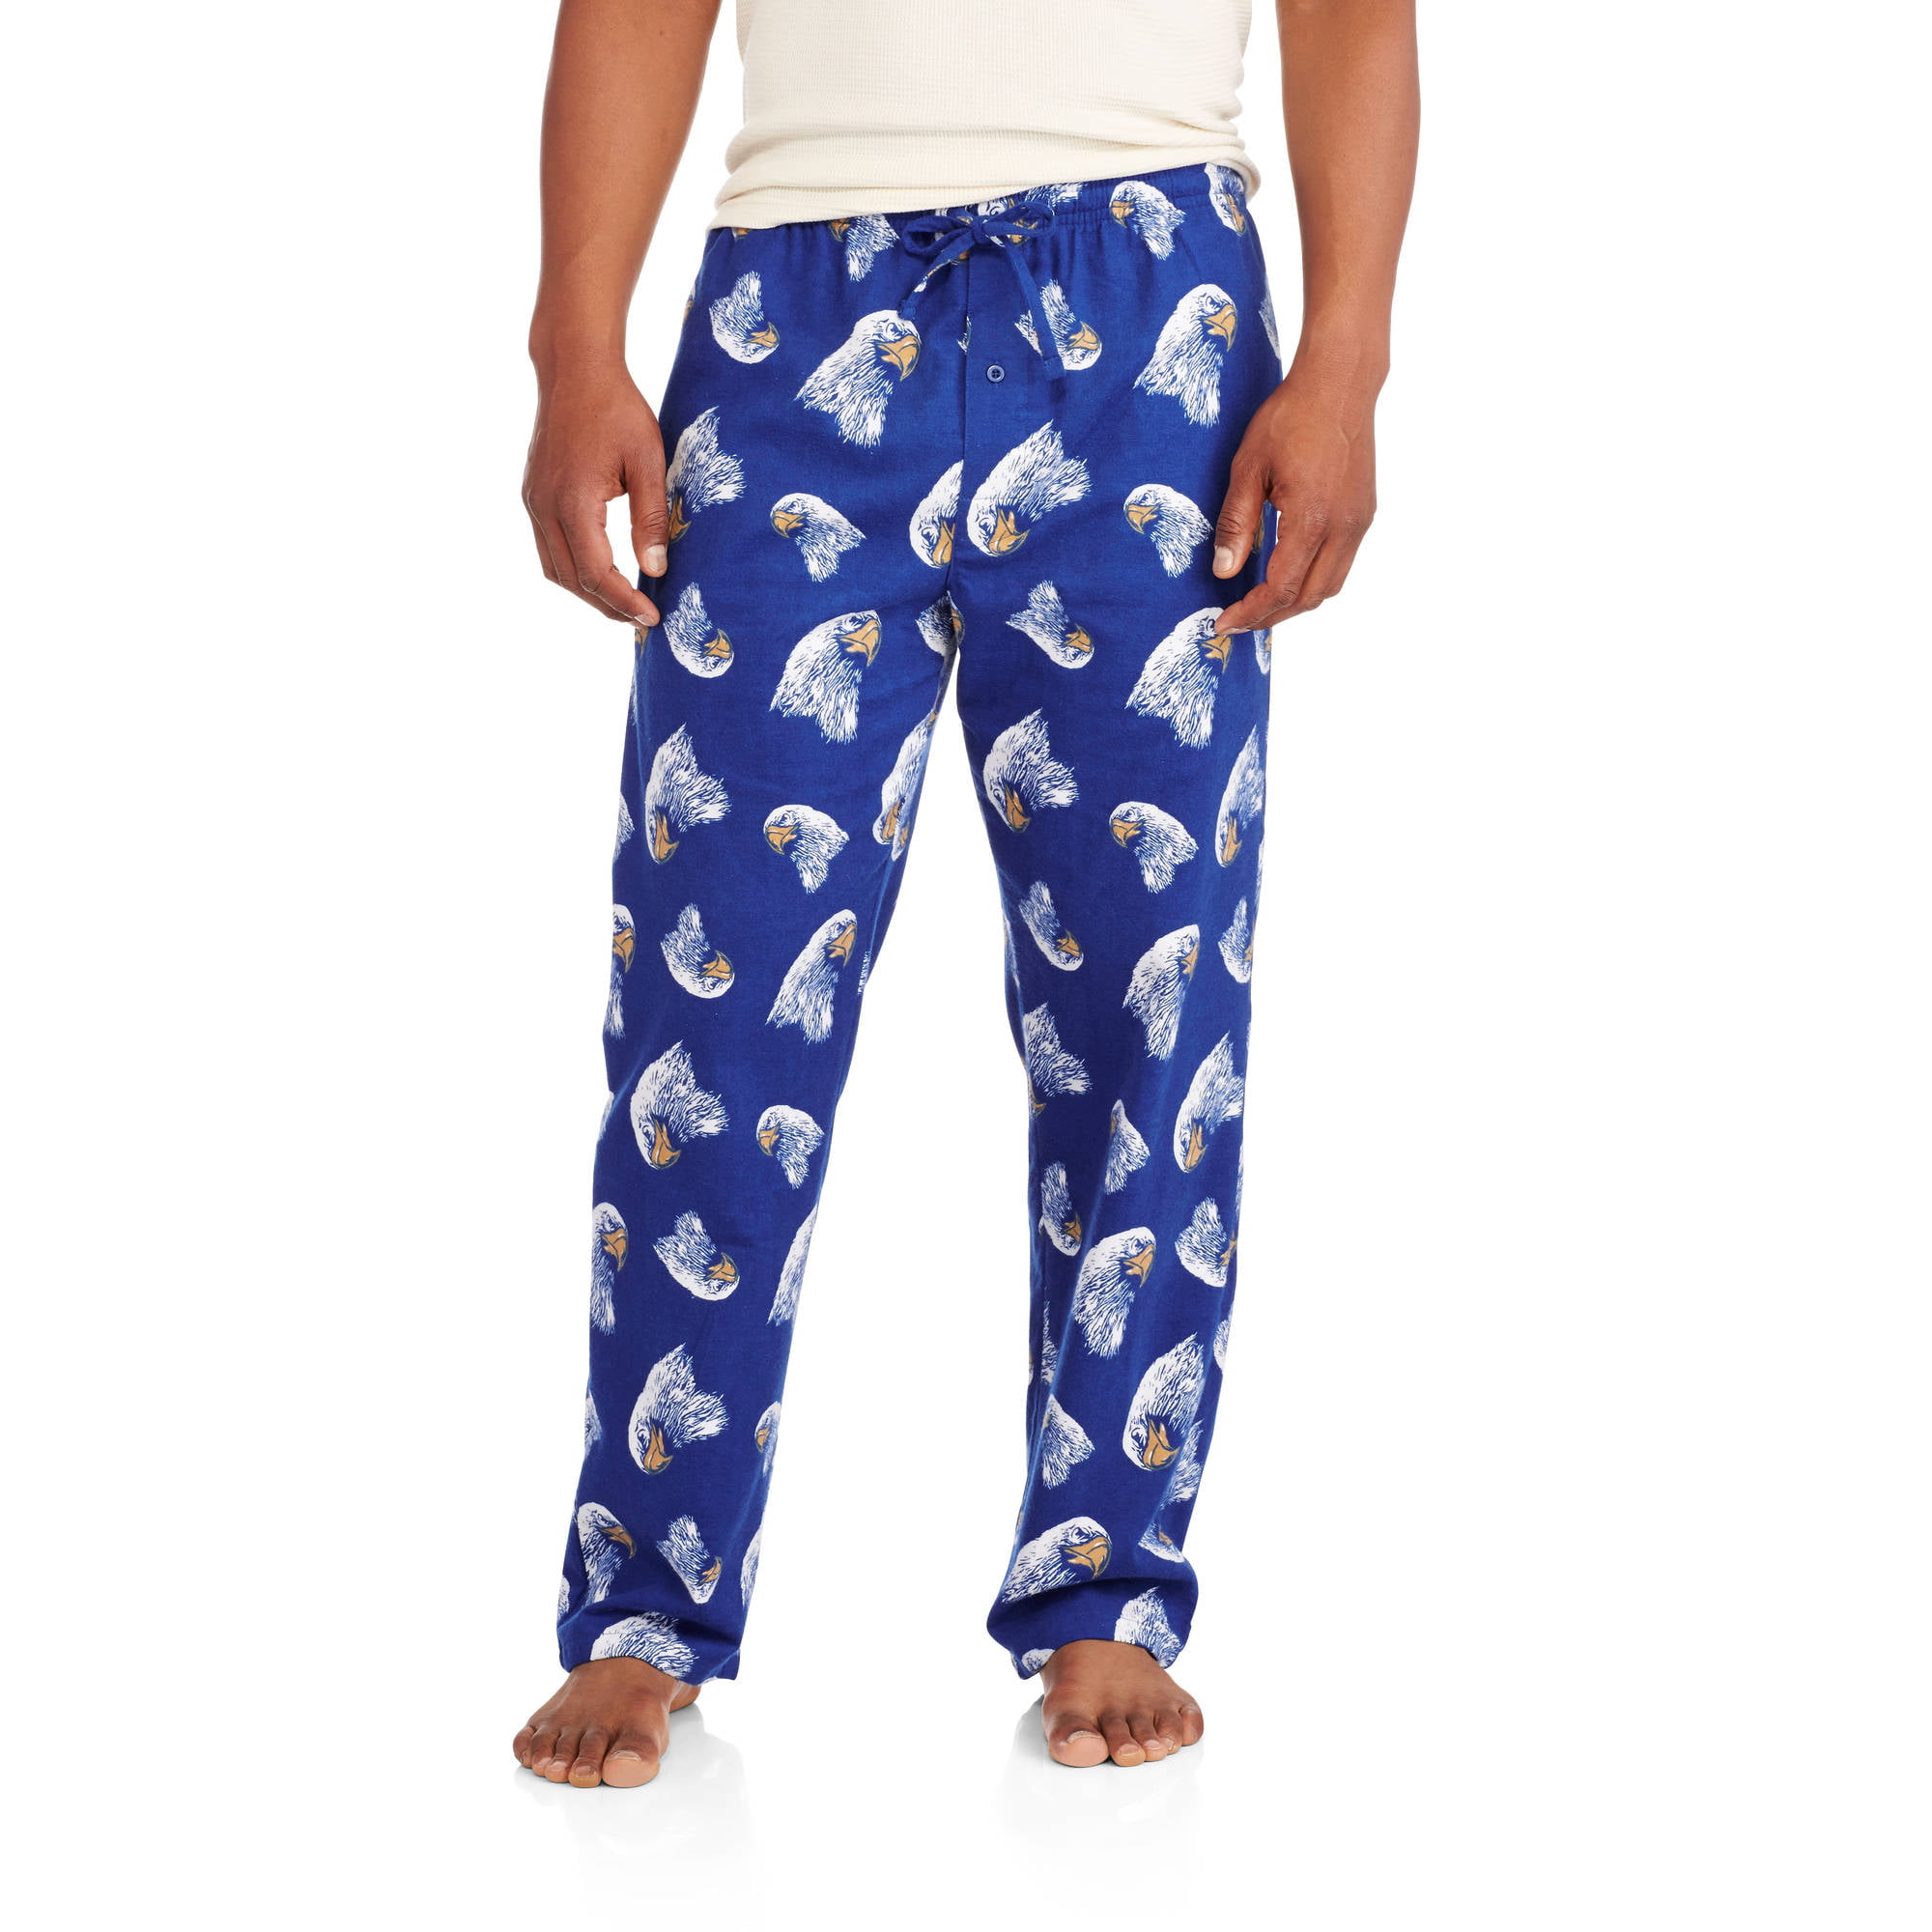 Men's Flannel Sleep Pants - Walmart.com